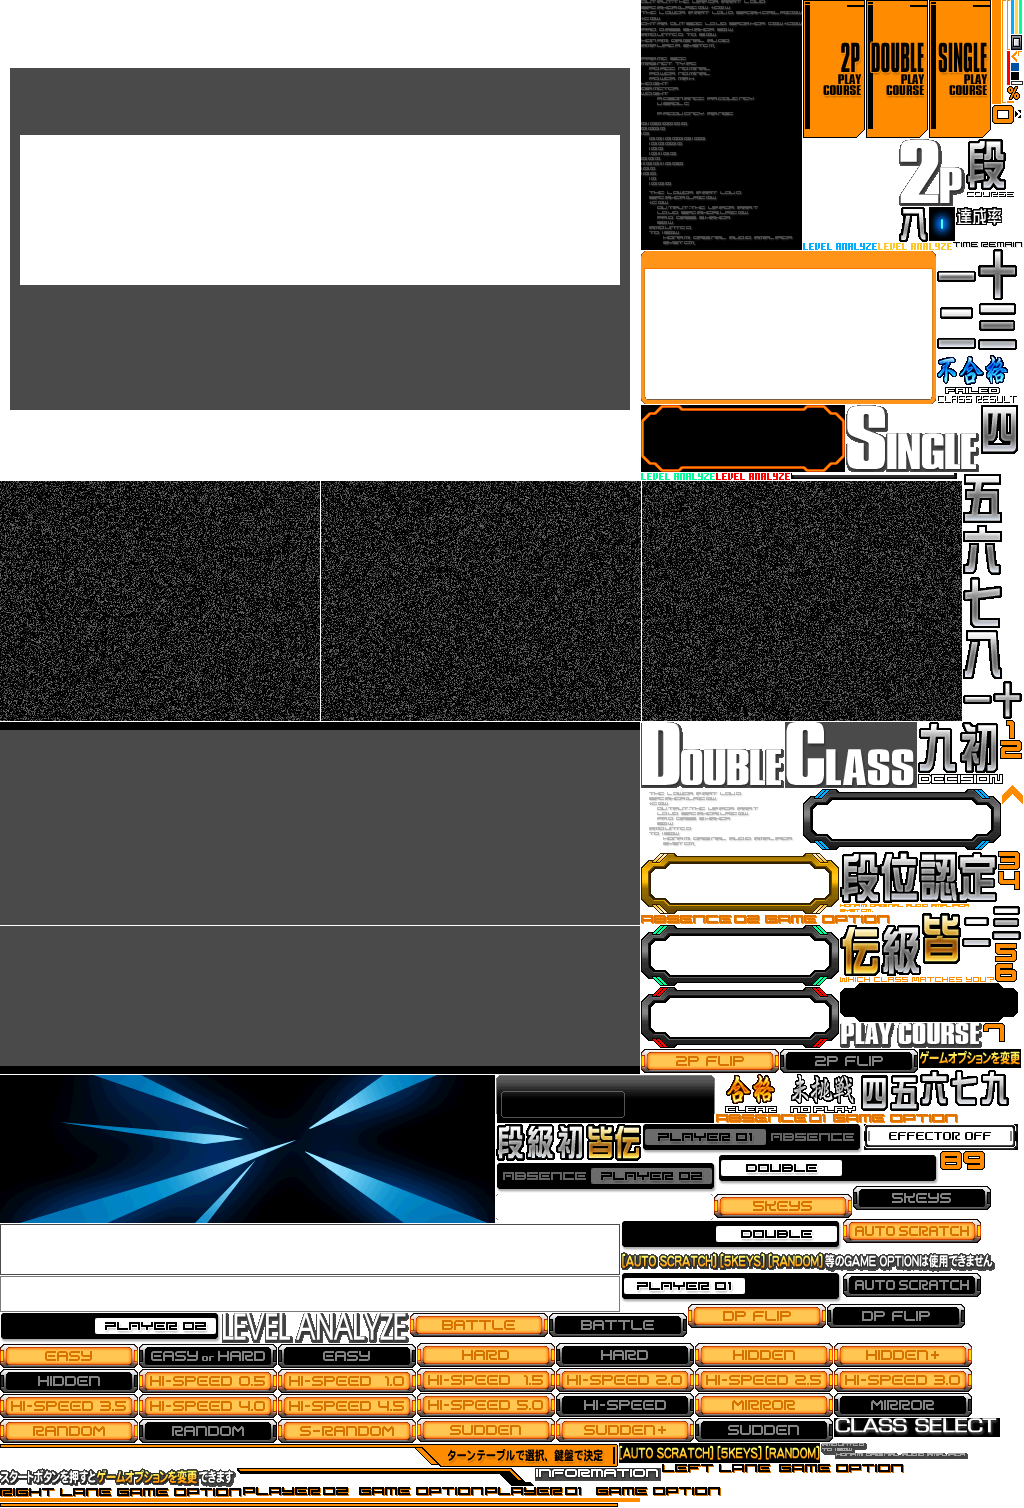 beatmania IIDX Series - Mode Select